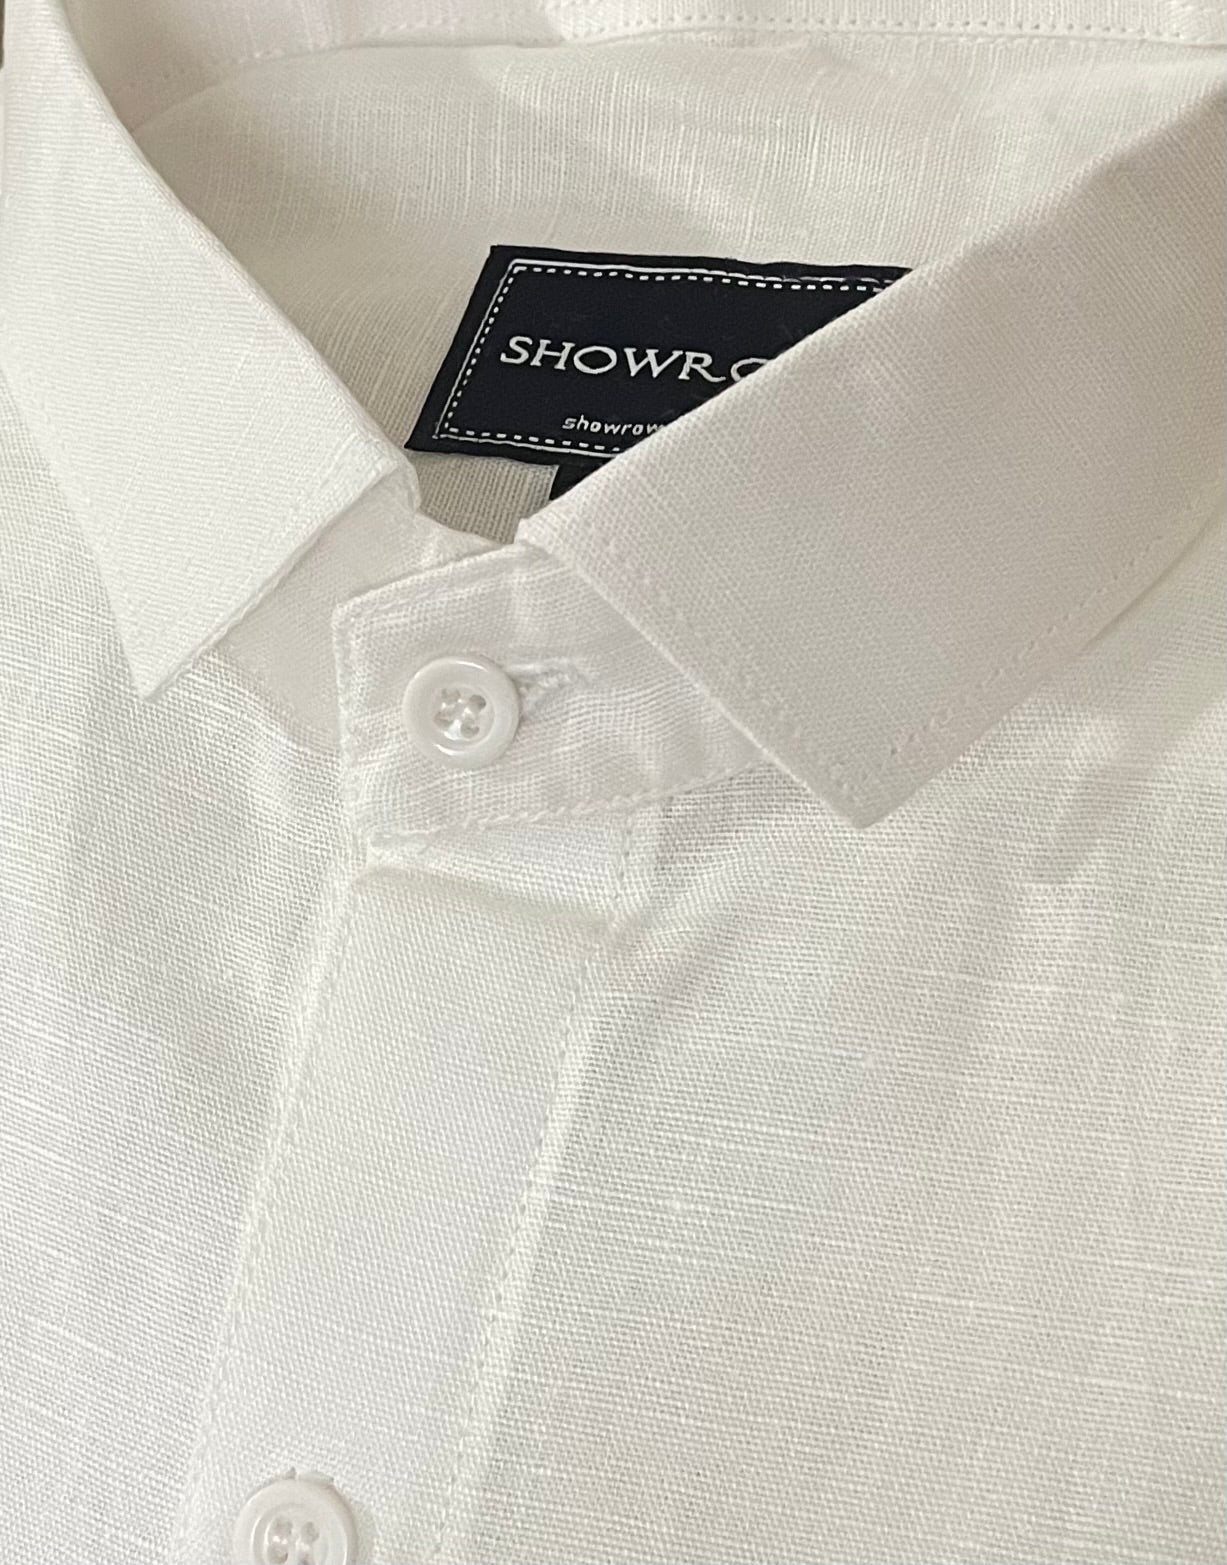 Linen- White half sleeves shirt